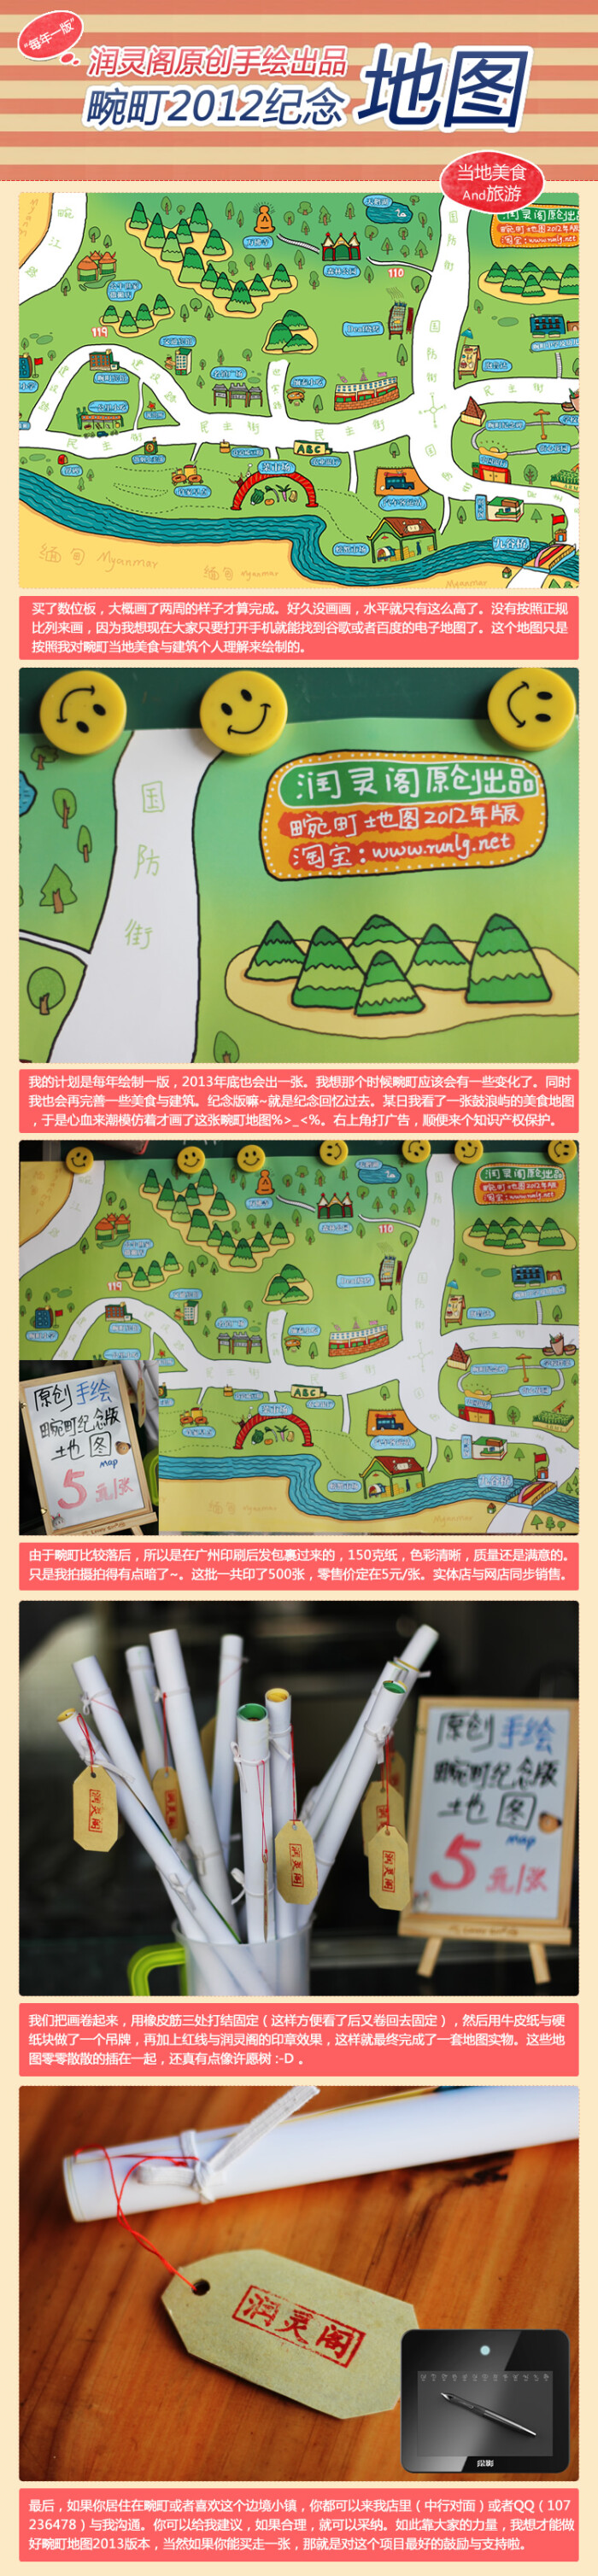 云南畹町小镇手绘地图 via:润灵鸽